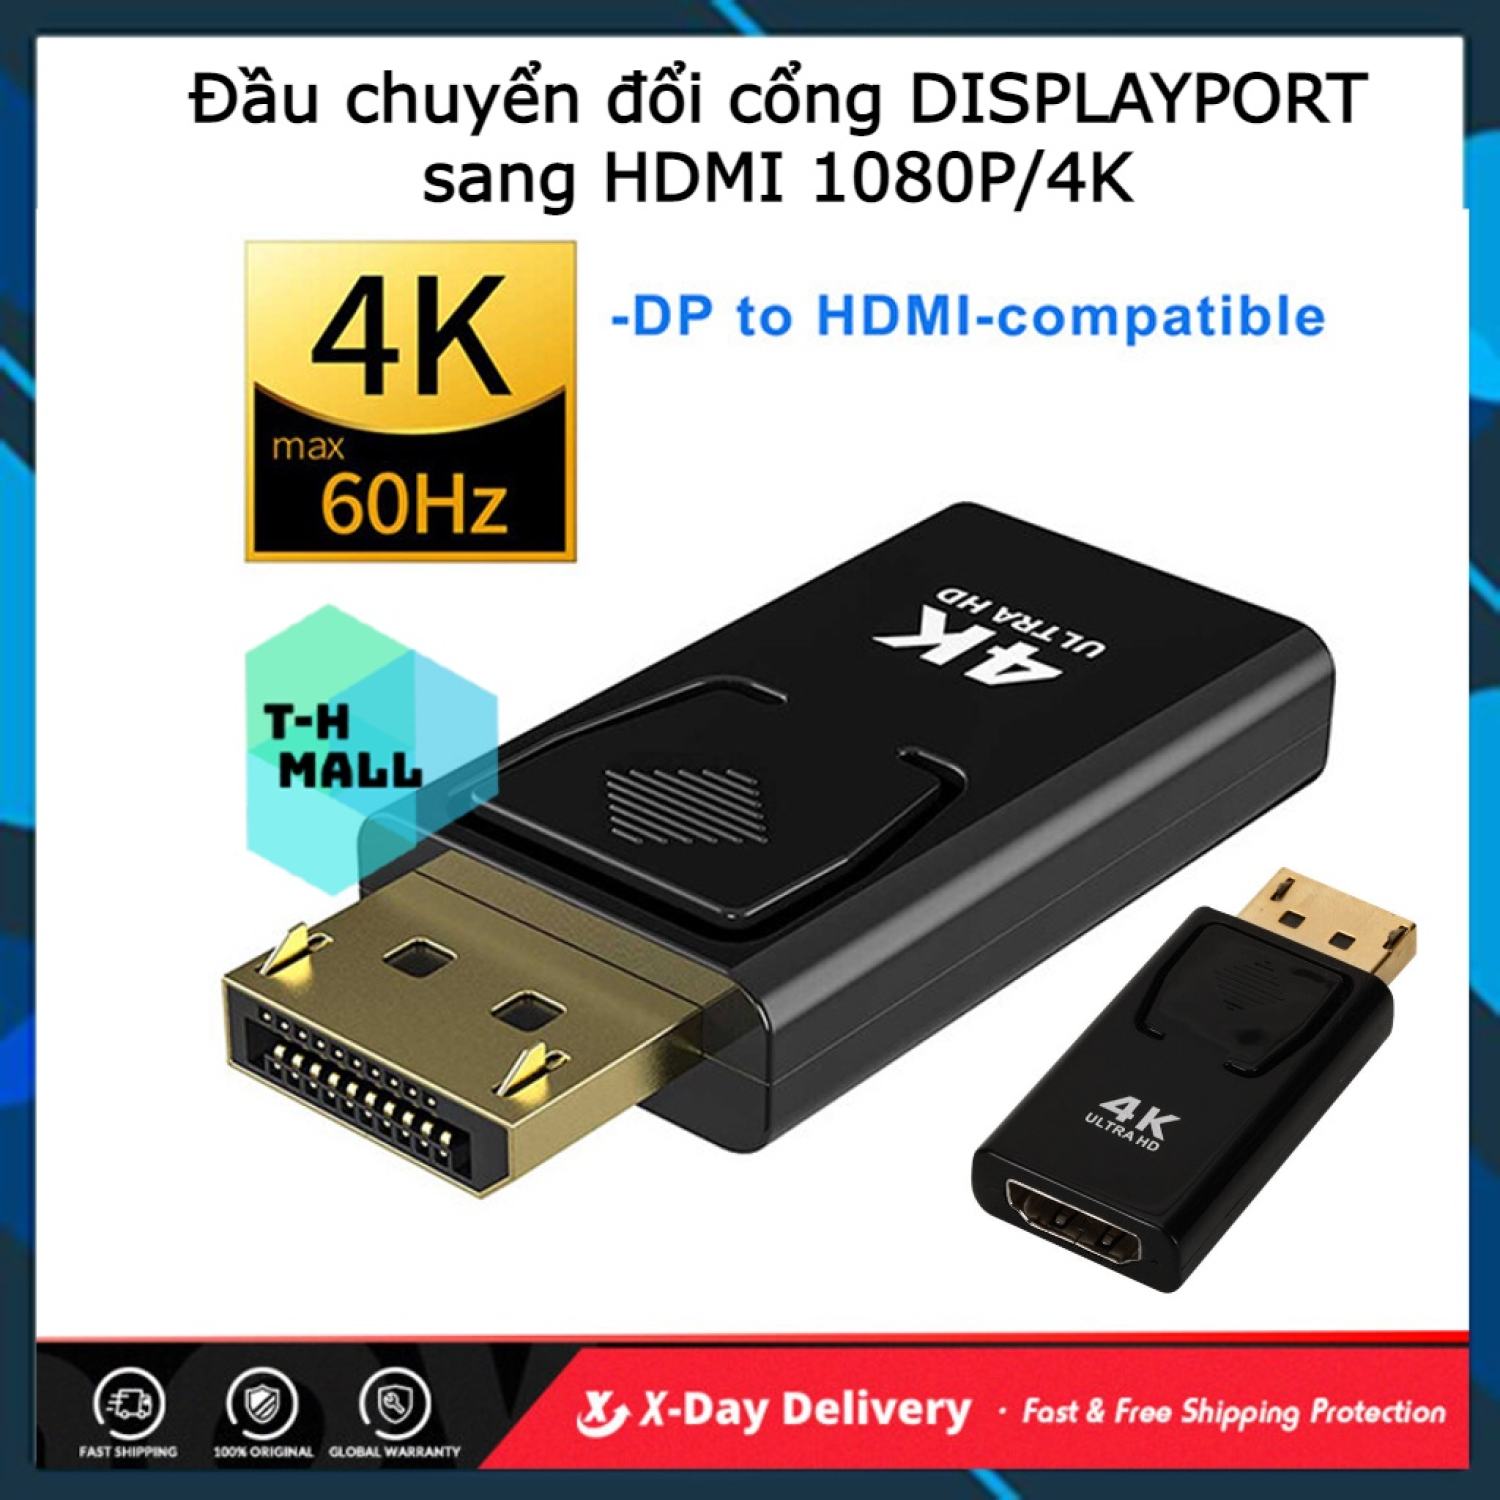 Bộ Đầu Chuyển Đổi DISPLAYPORT Sang HDMI Hiển Thị 4K 1080P HD cho Màn Hình